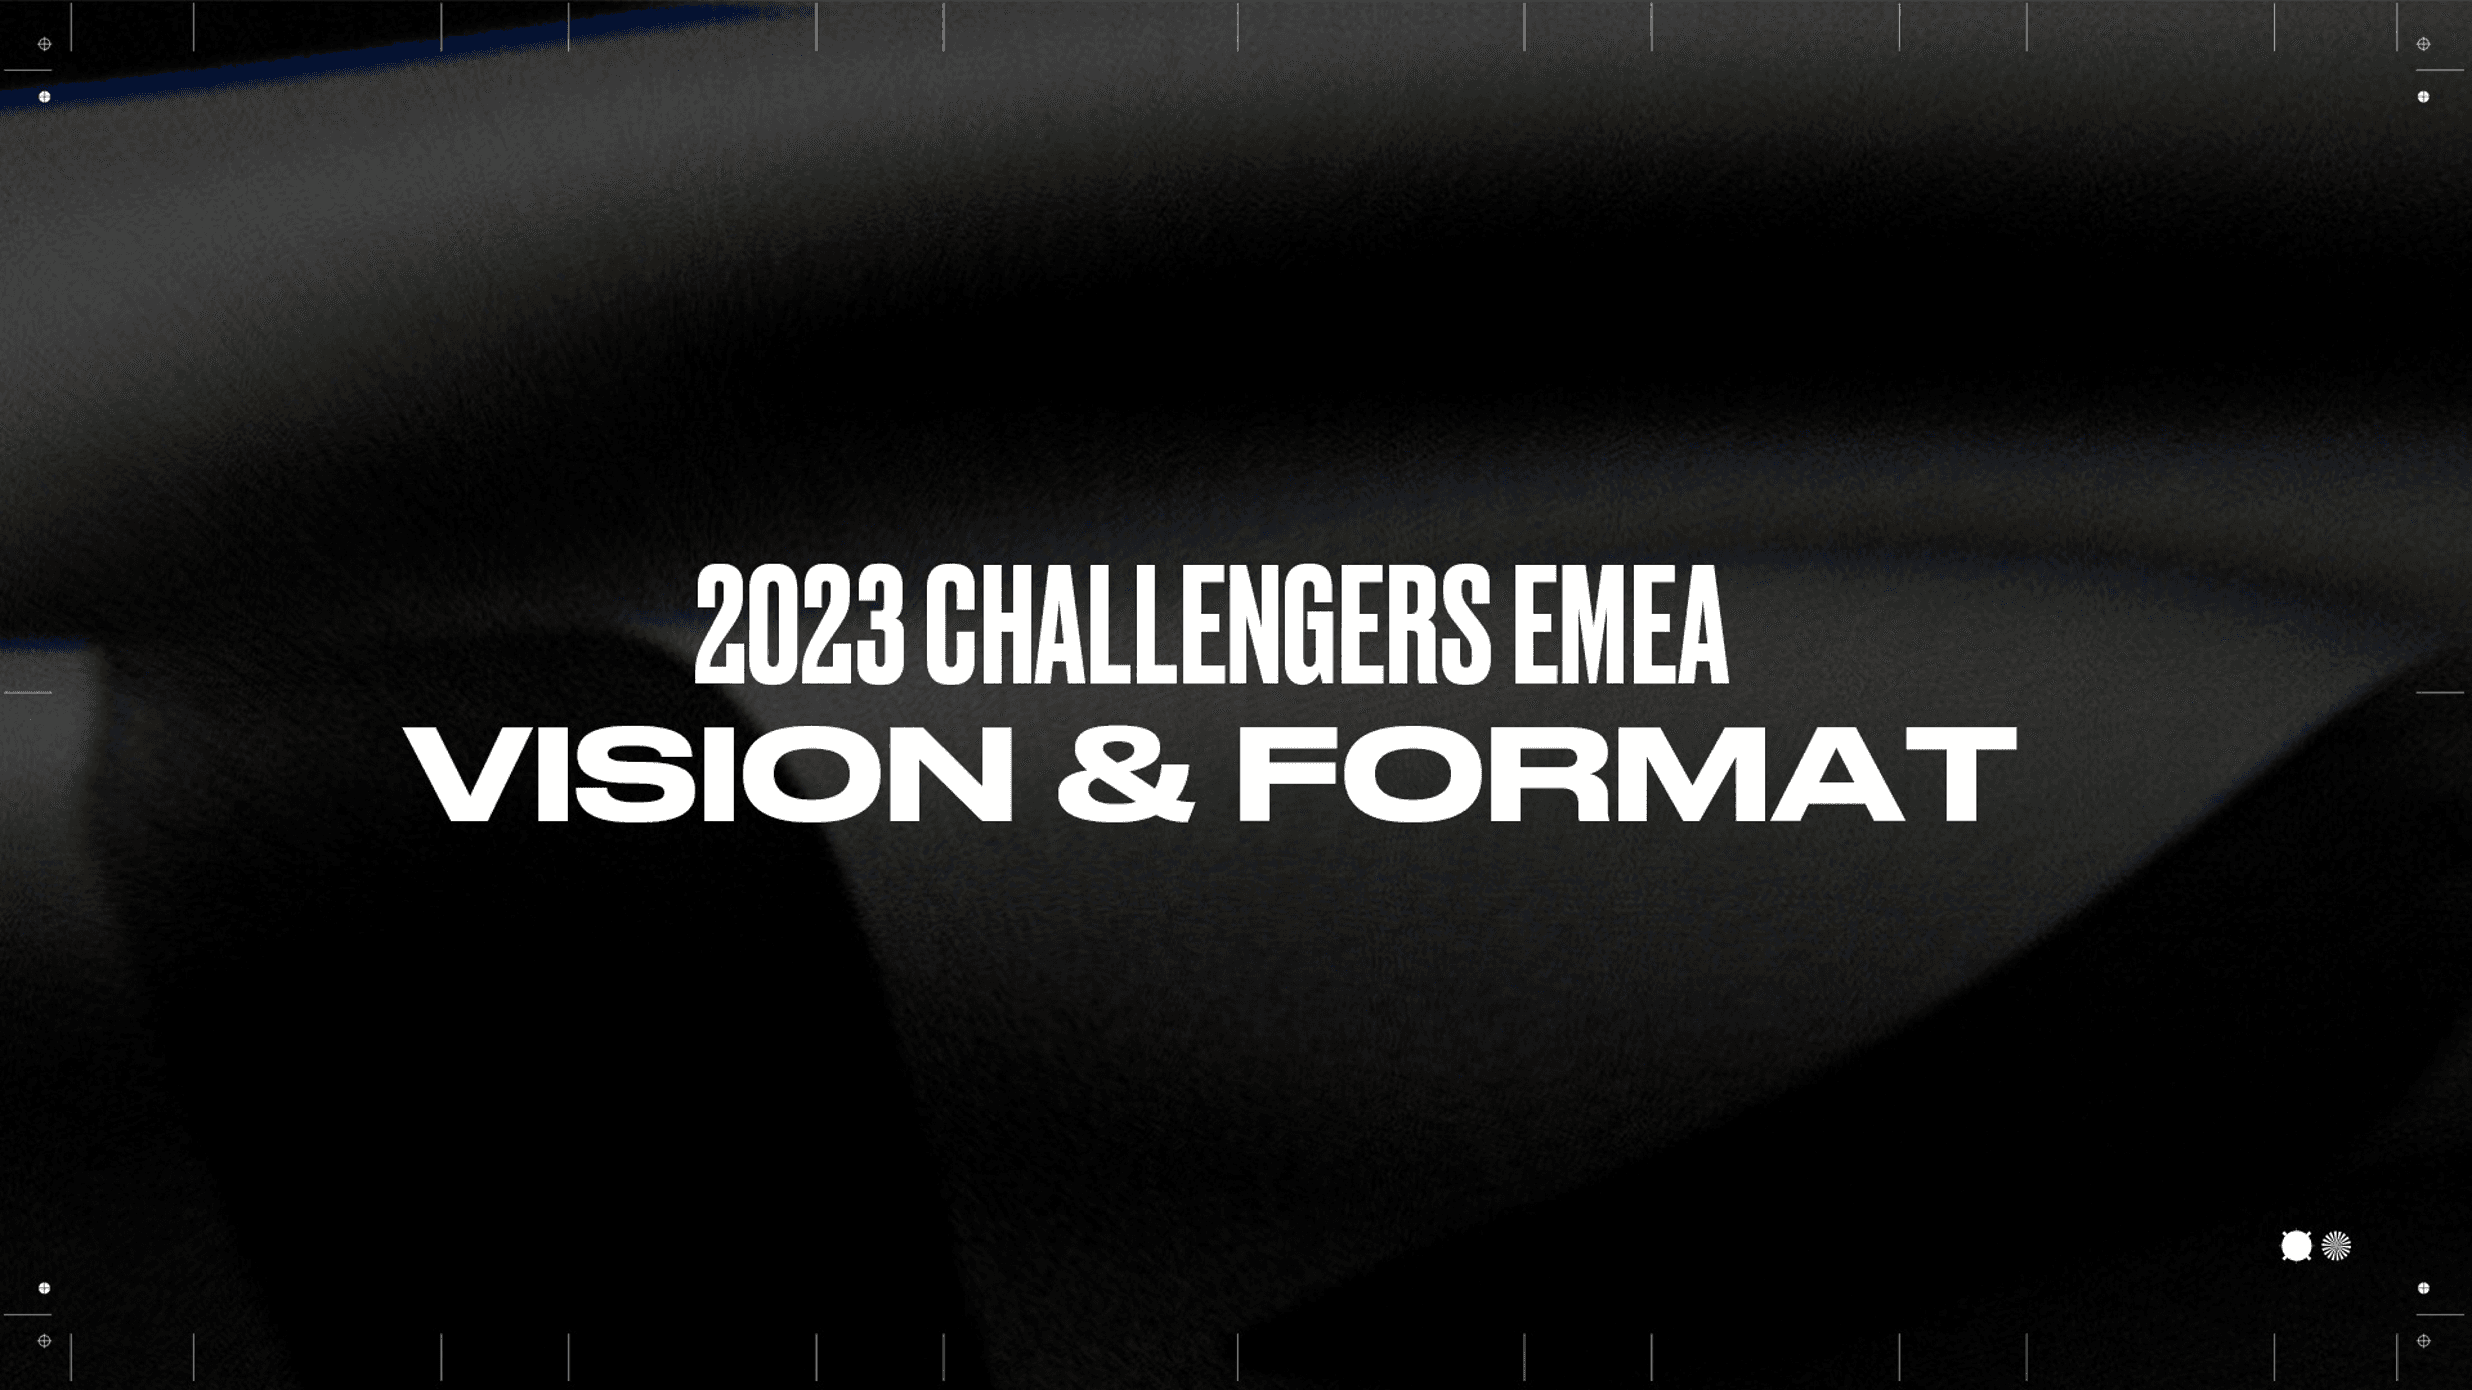 Se anuncia el nuevo formato Challengers para el año 2023.